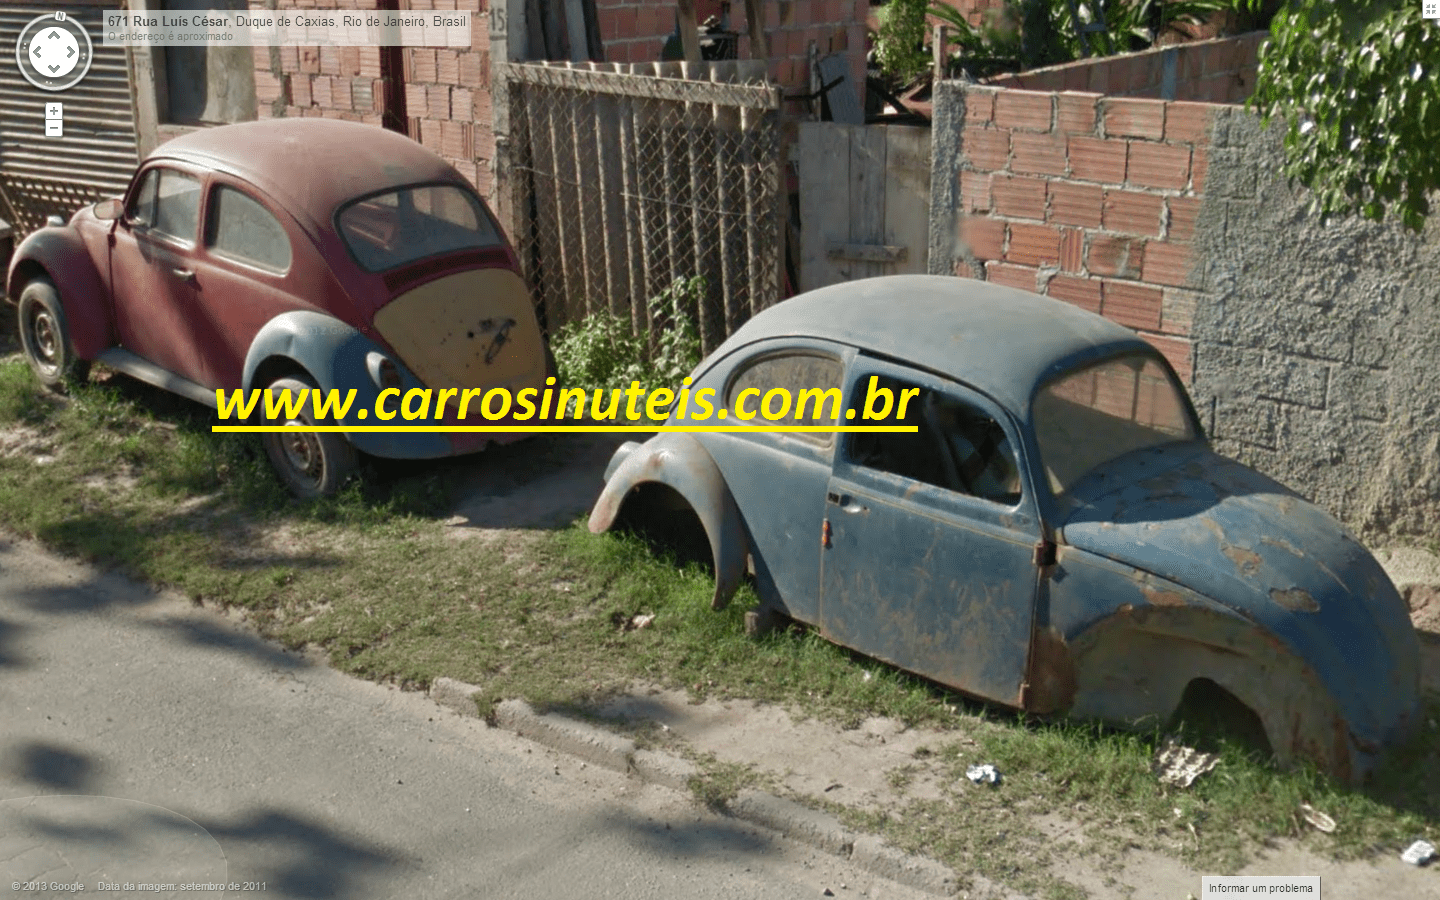 VW Fusca, Duque de Caxias, RJ, BY Luciano